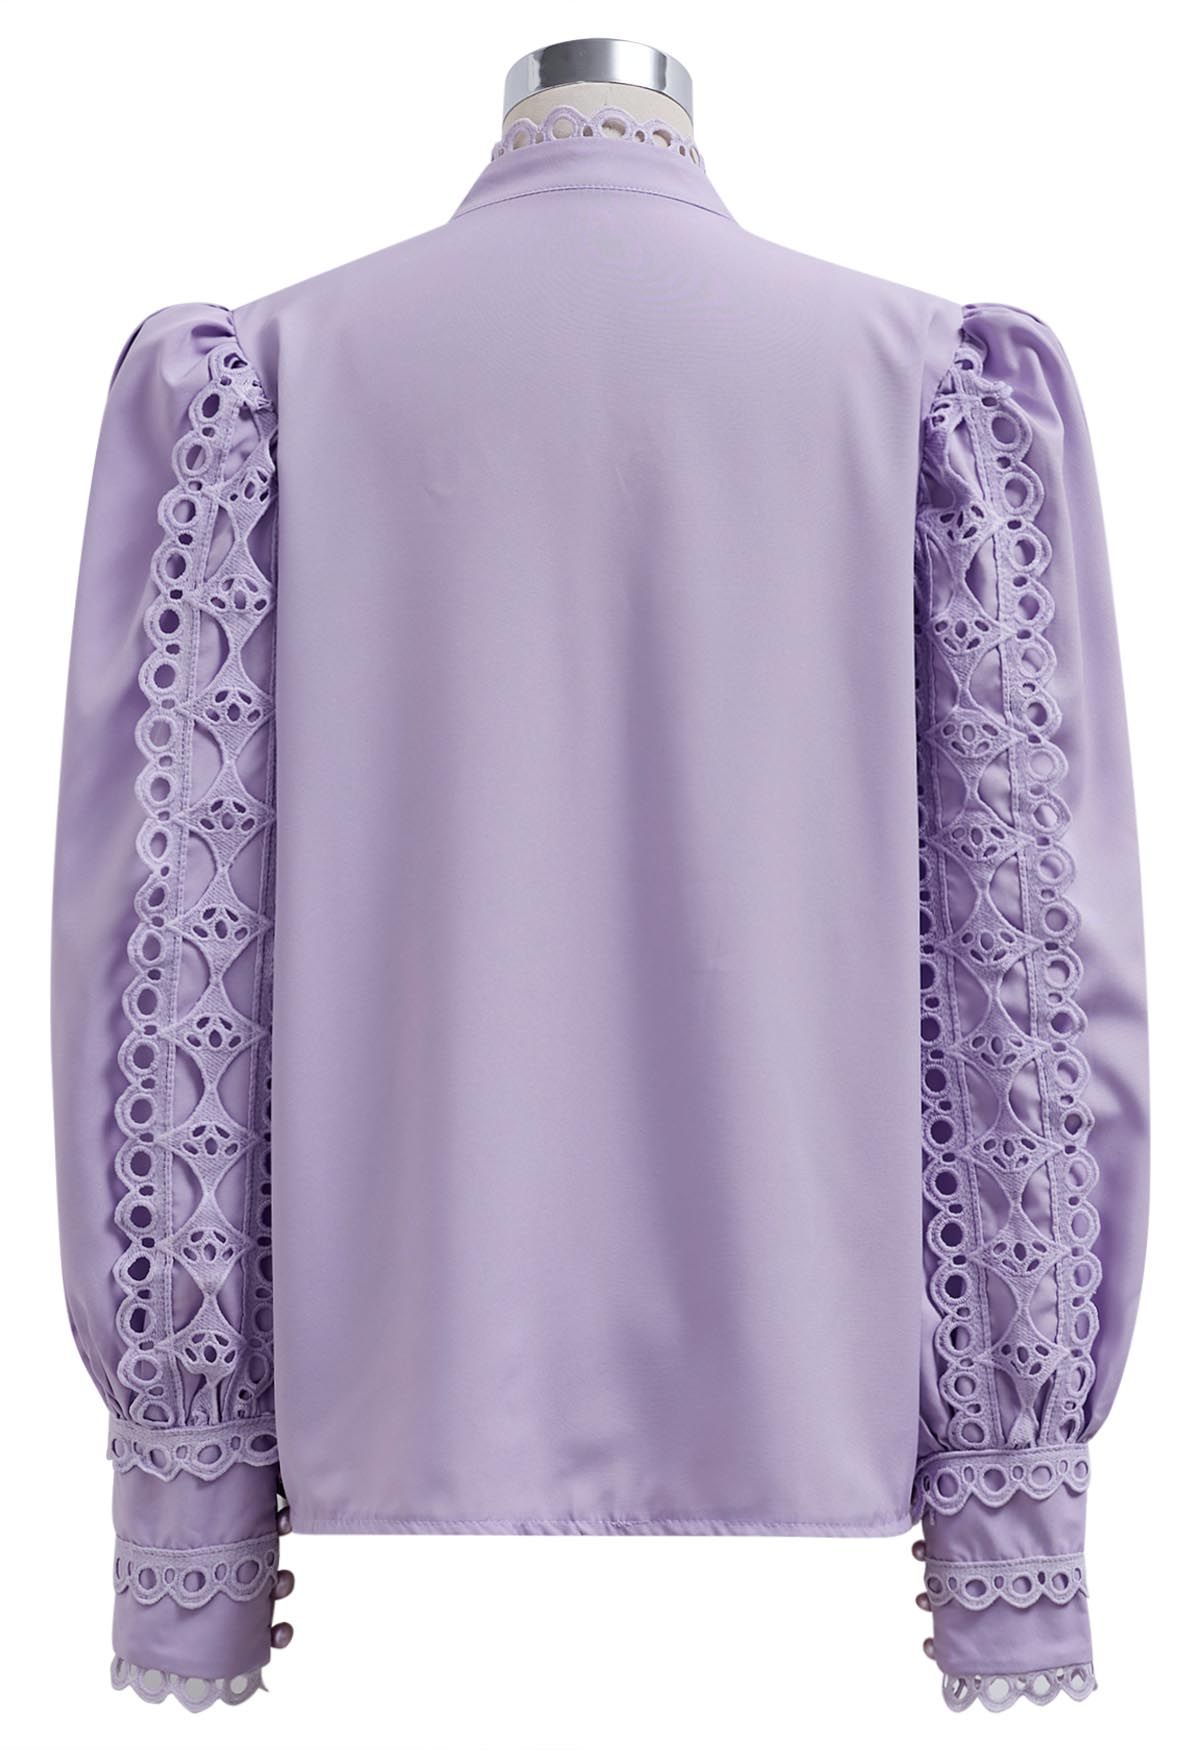 Exquisita camisa con botones y mangas de burbujas en color lila